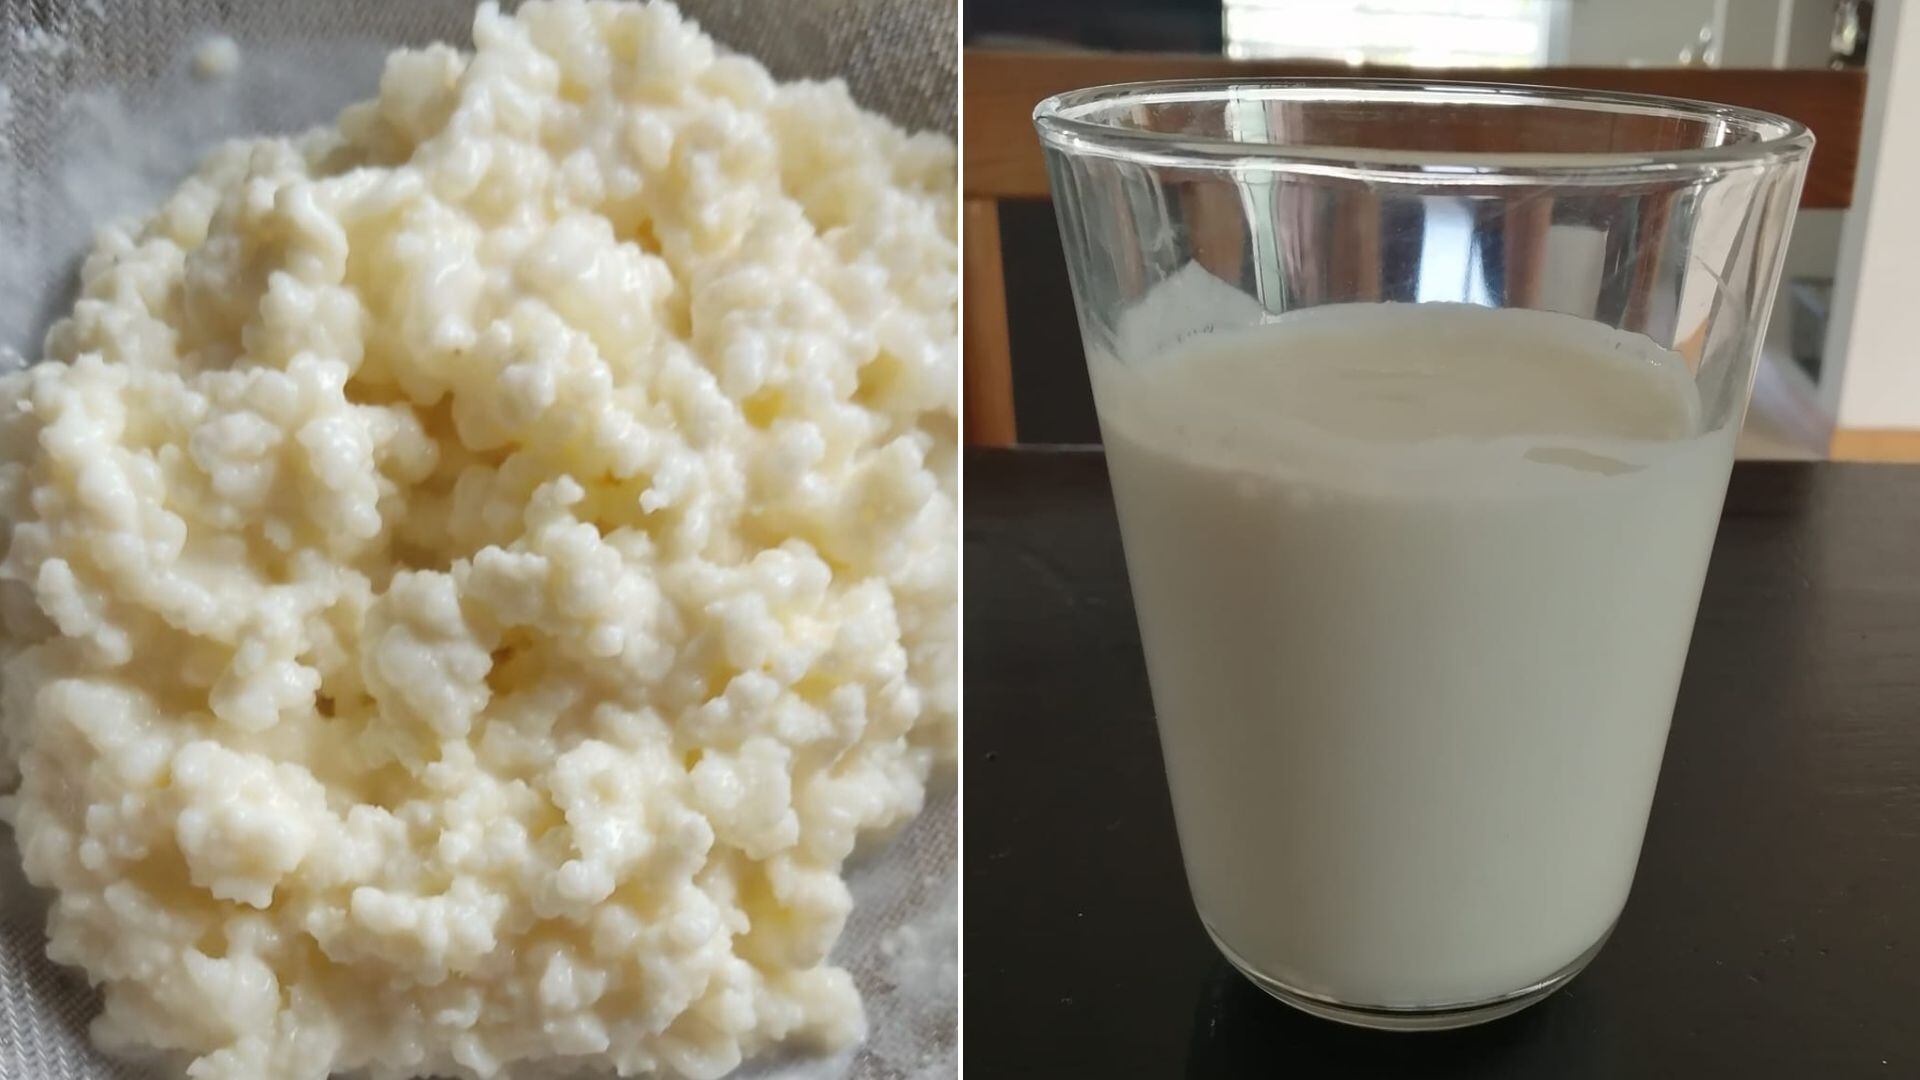 Los búlgaros de leche son muy beneficiosos para la salud. (Фејсбук: kefir, yogurt, kombucha, recetas y mucho más)